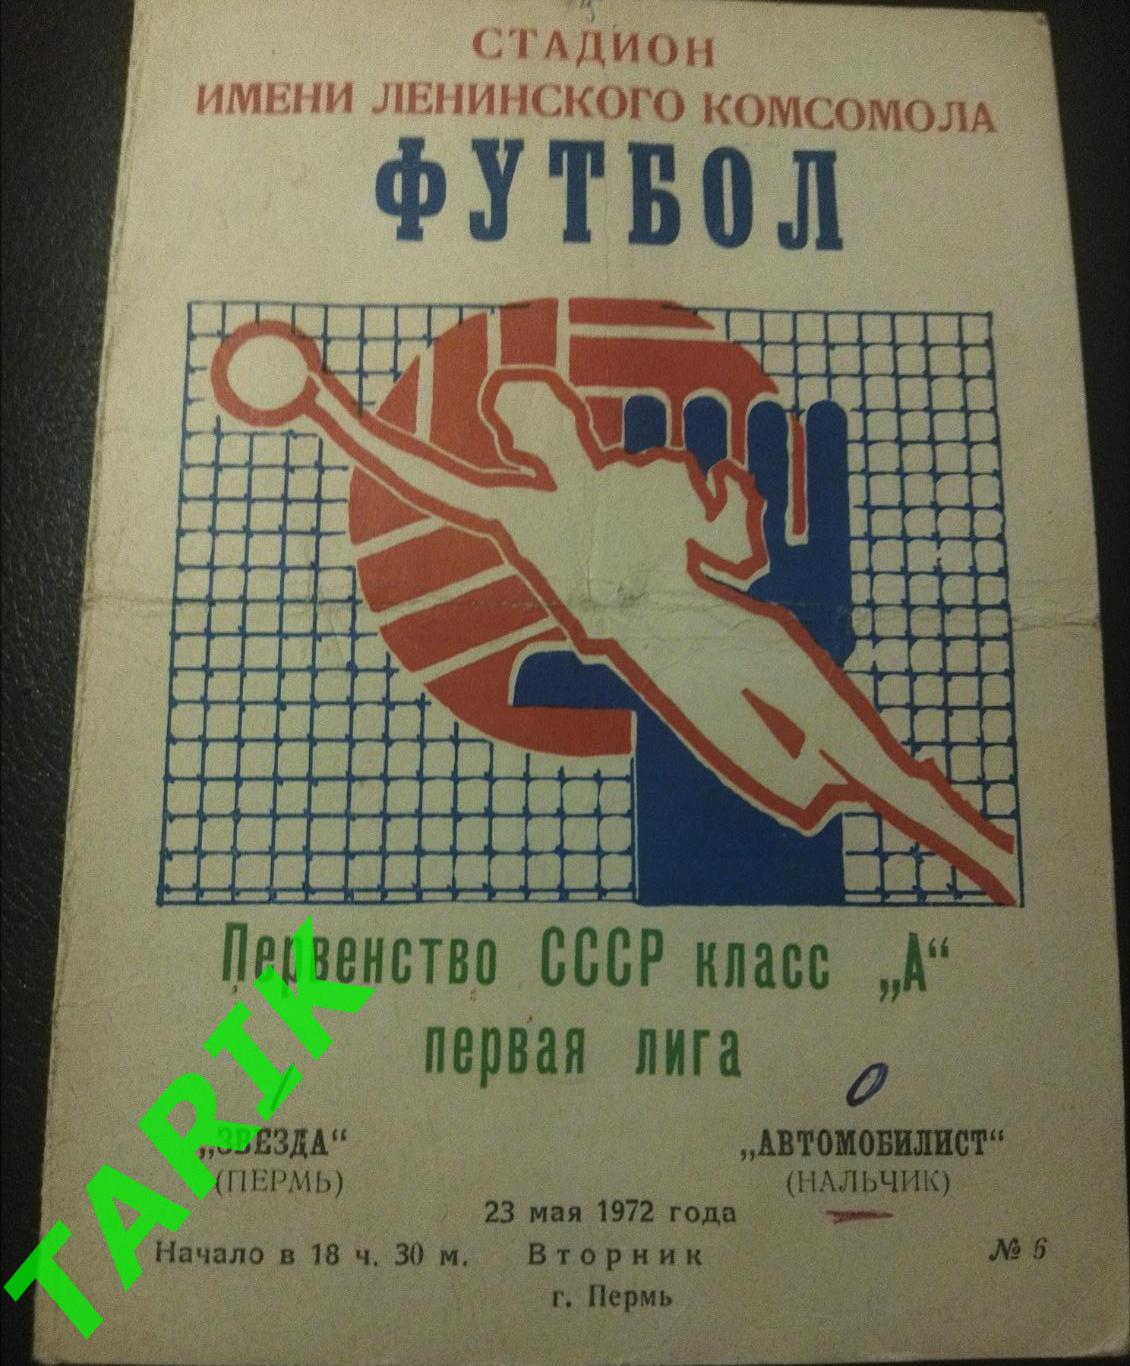 Звезда Пермь -Автомобилист Нальчик 23.05.1972